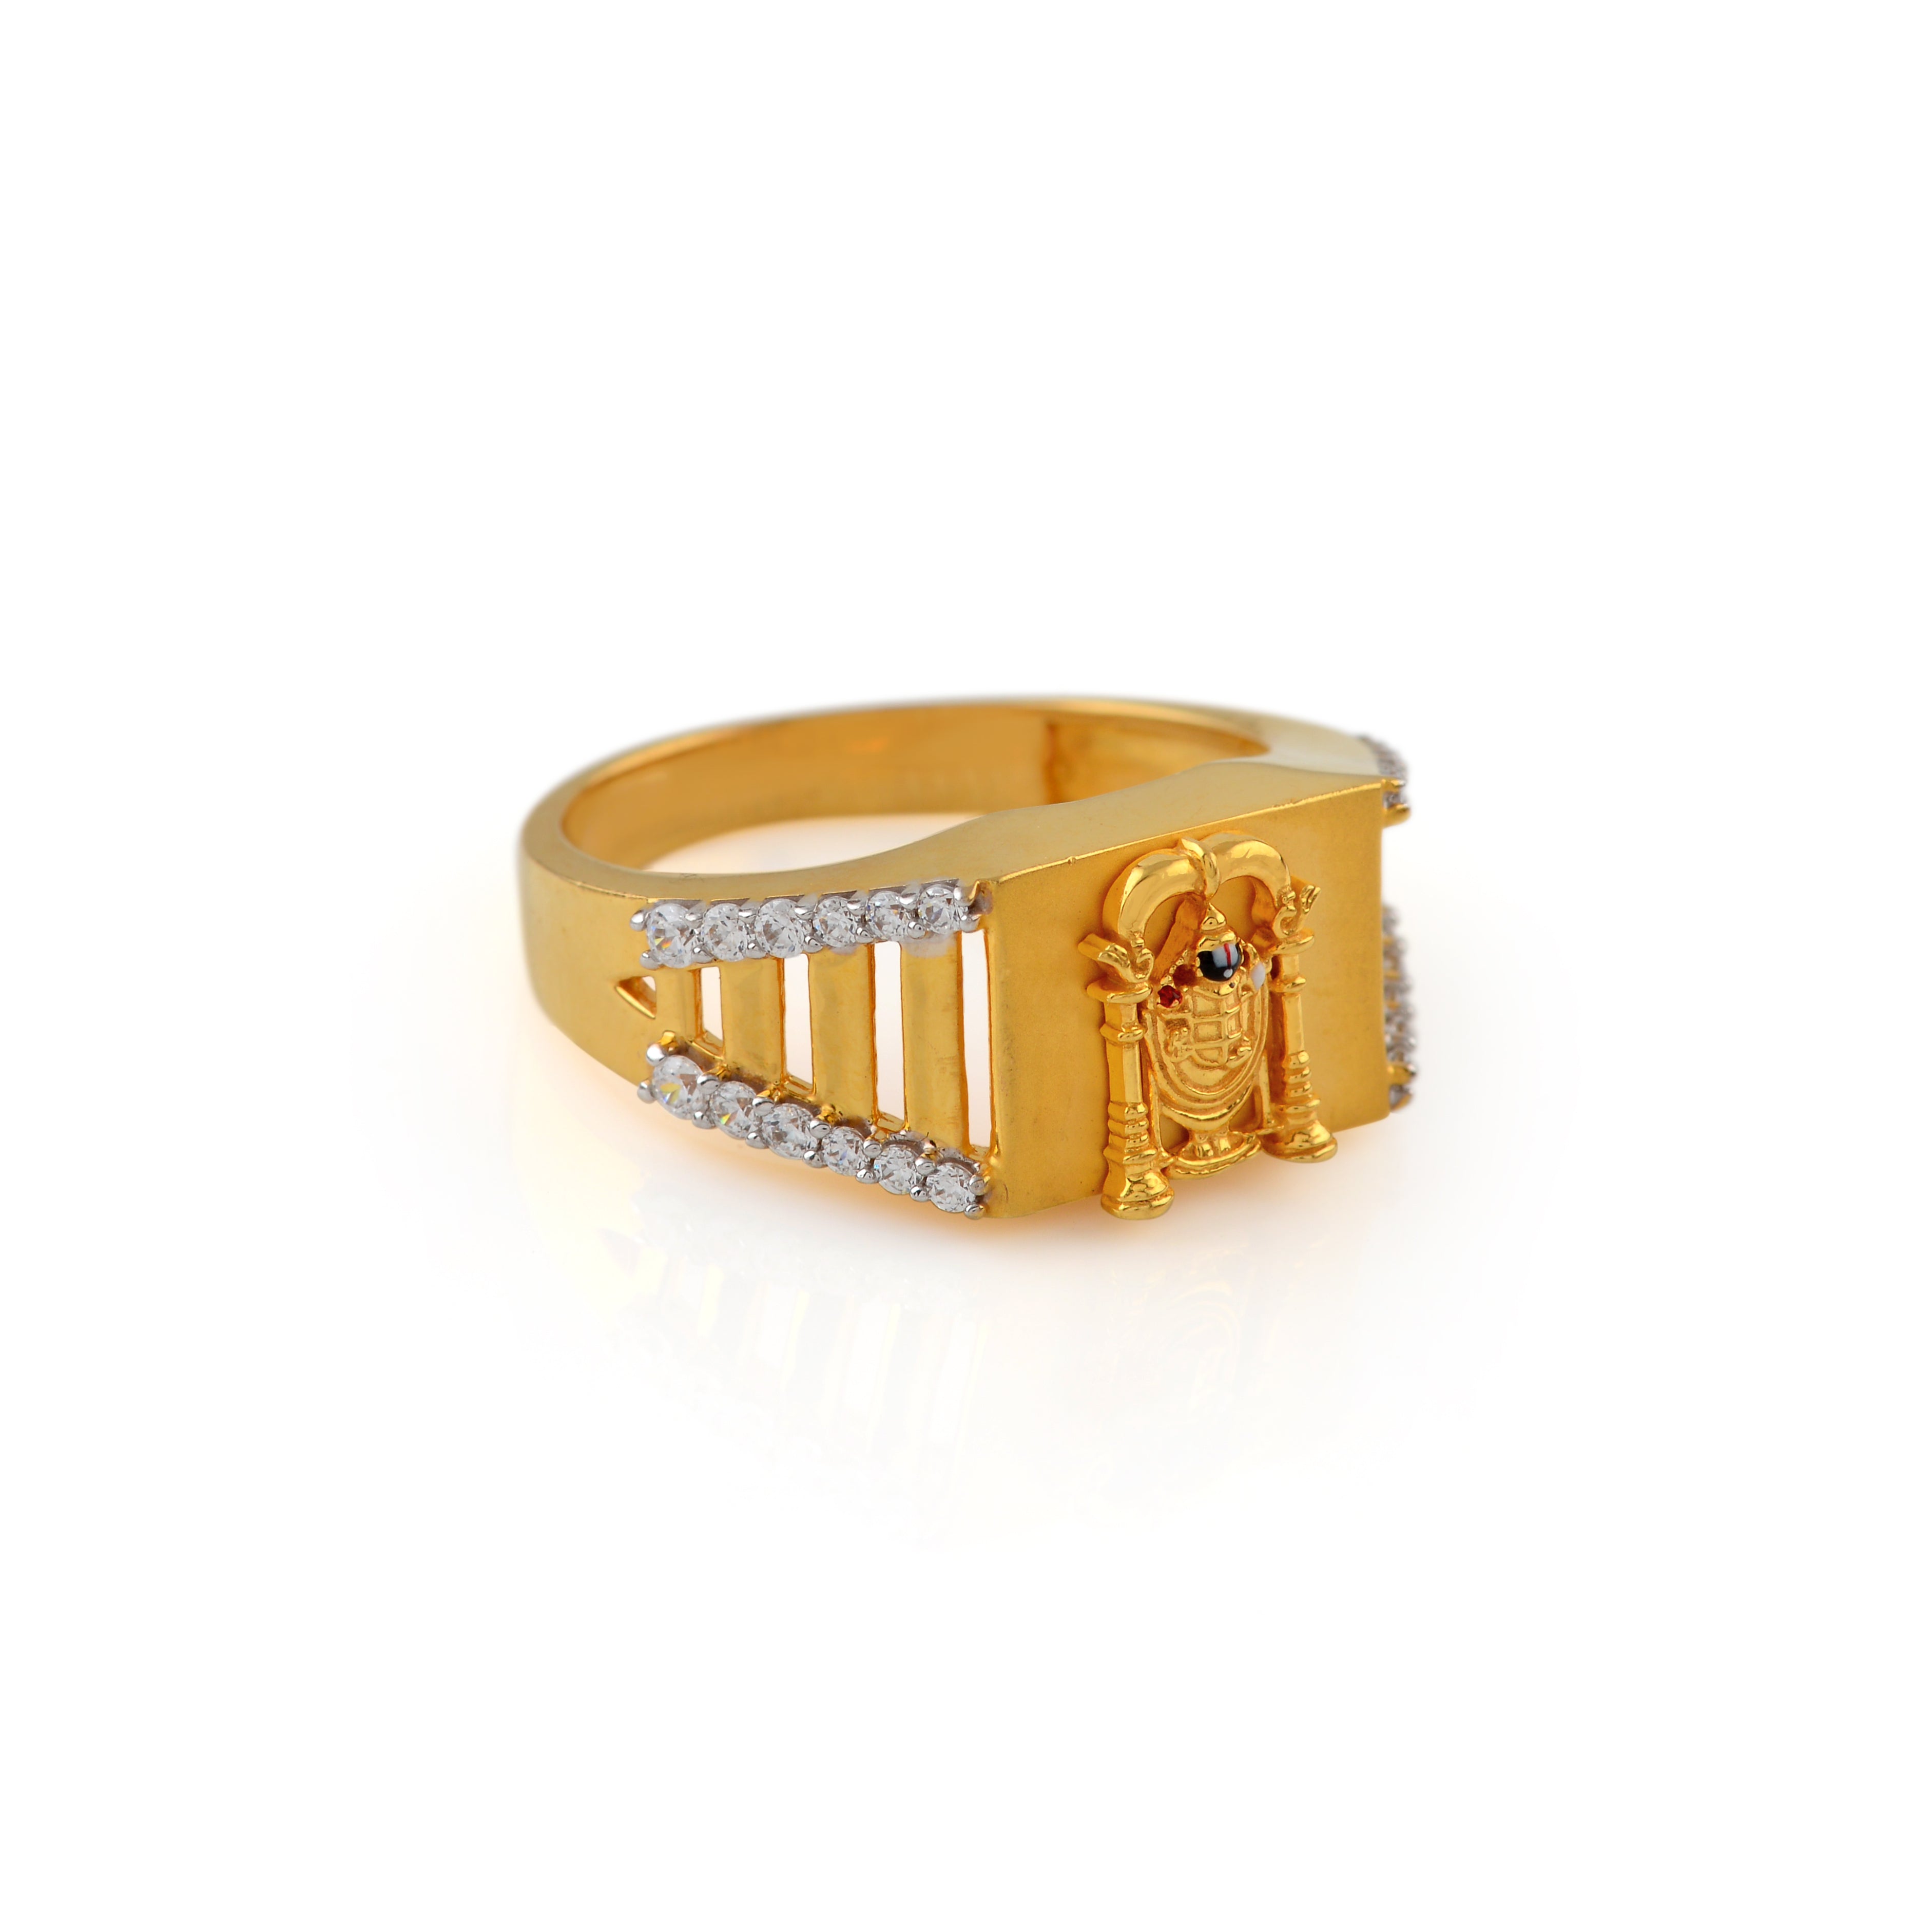 22K Gold Finger Ring With Balaji Engraving